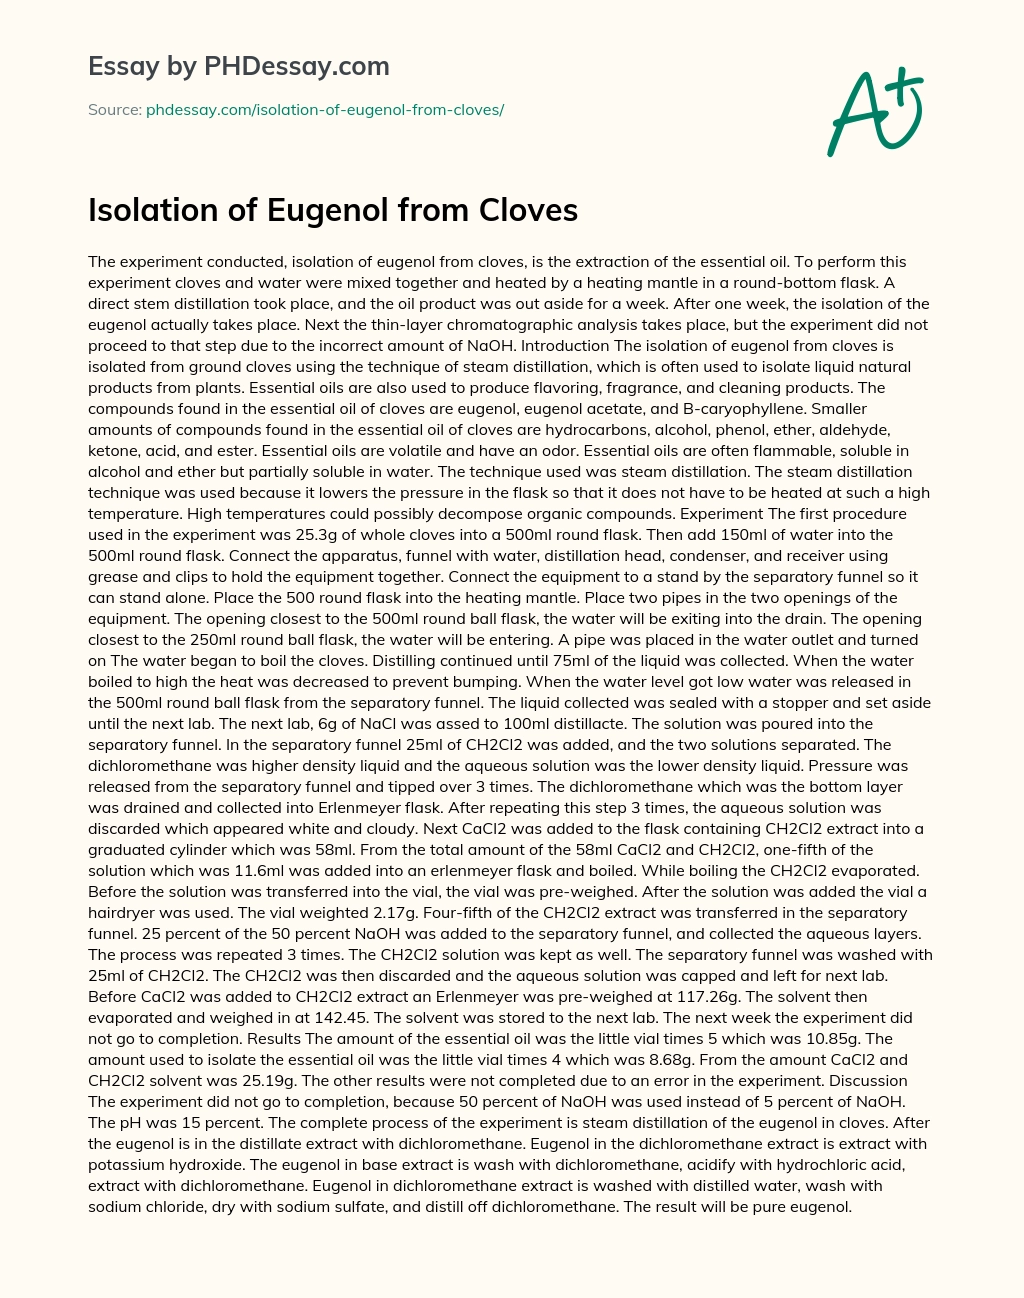 Isolation of Eugenol from Cloves essay